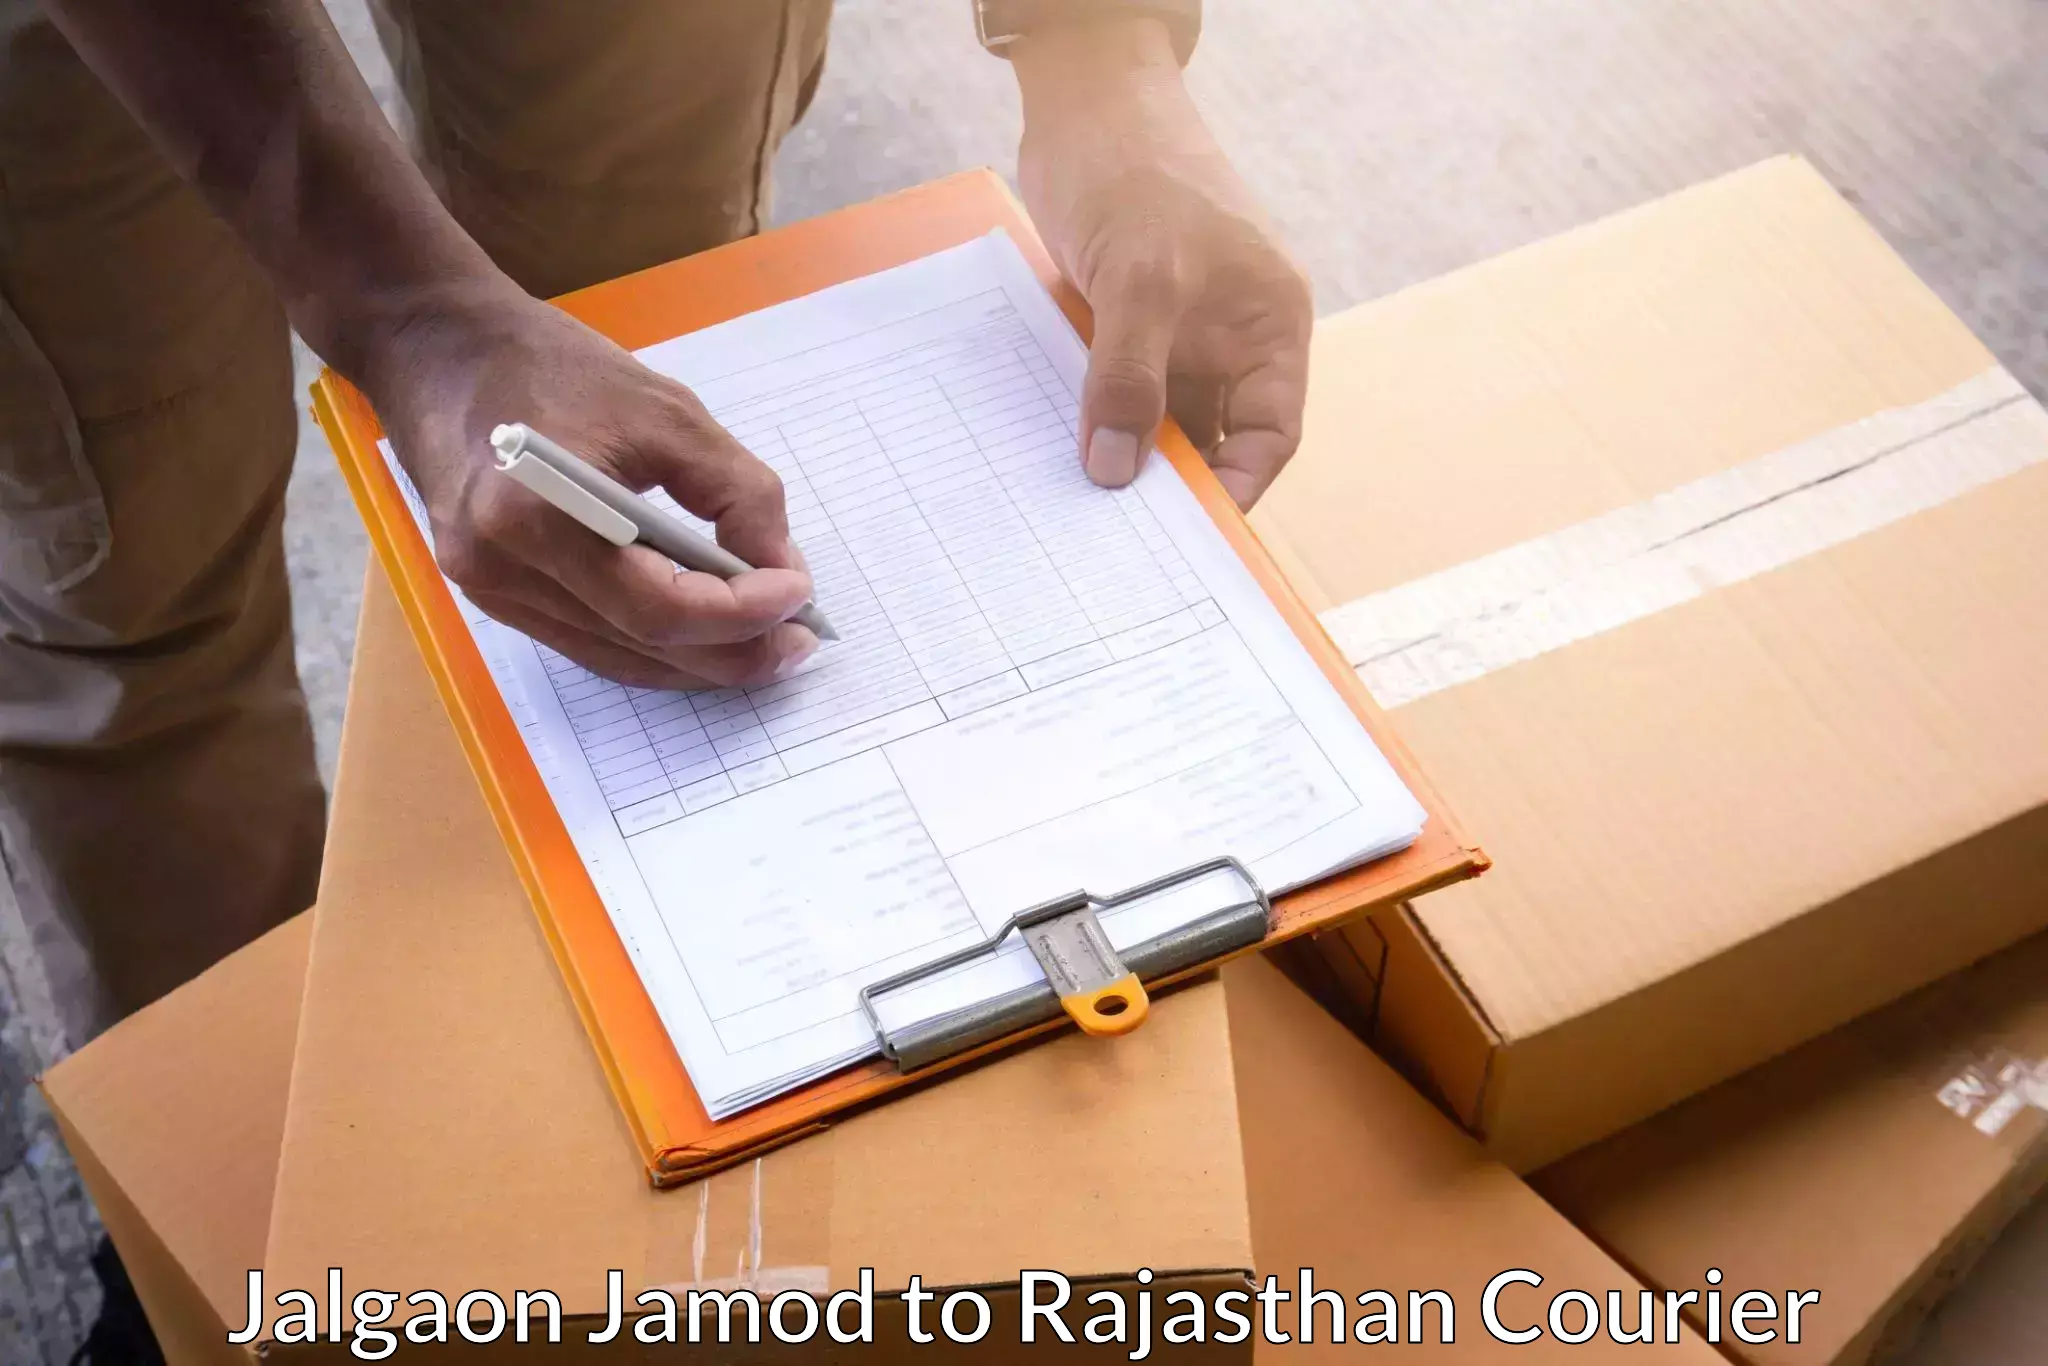 Express logistics Jalgaon Jamod to Bhiwadi